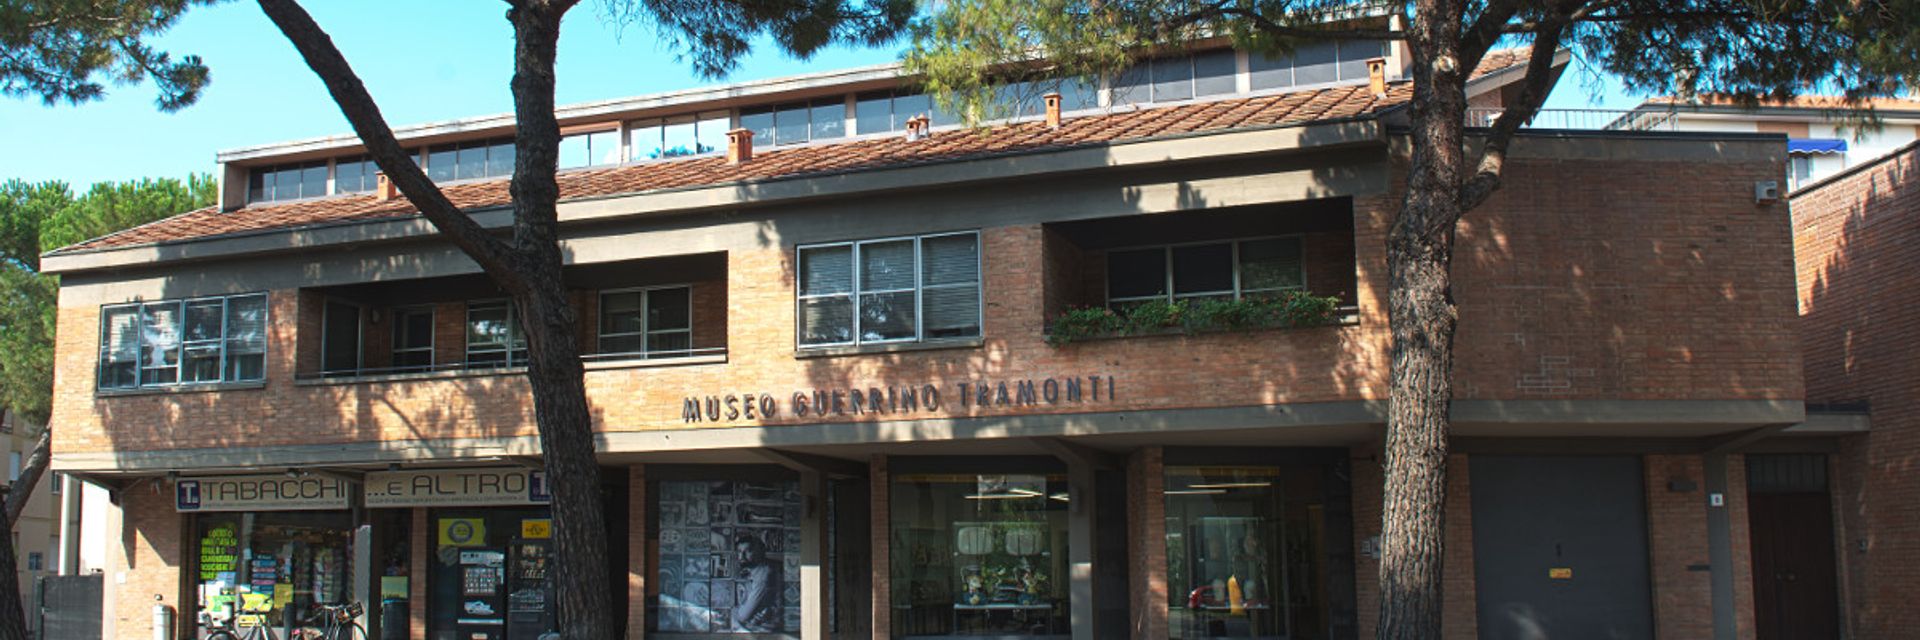 Musée Guerrino Tramonti